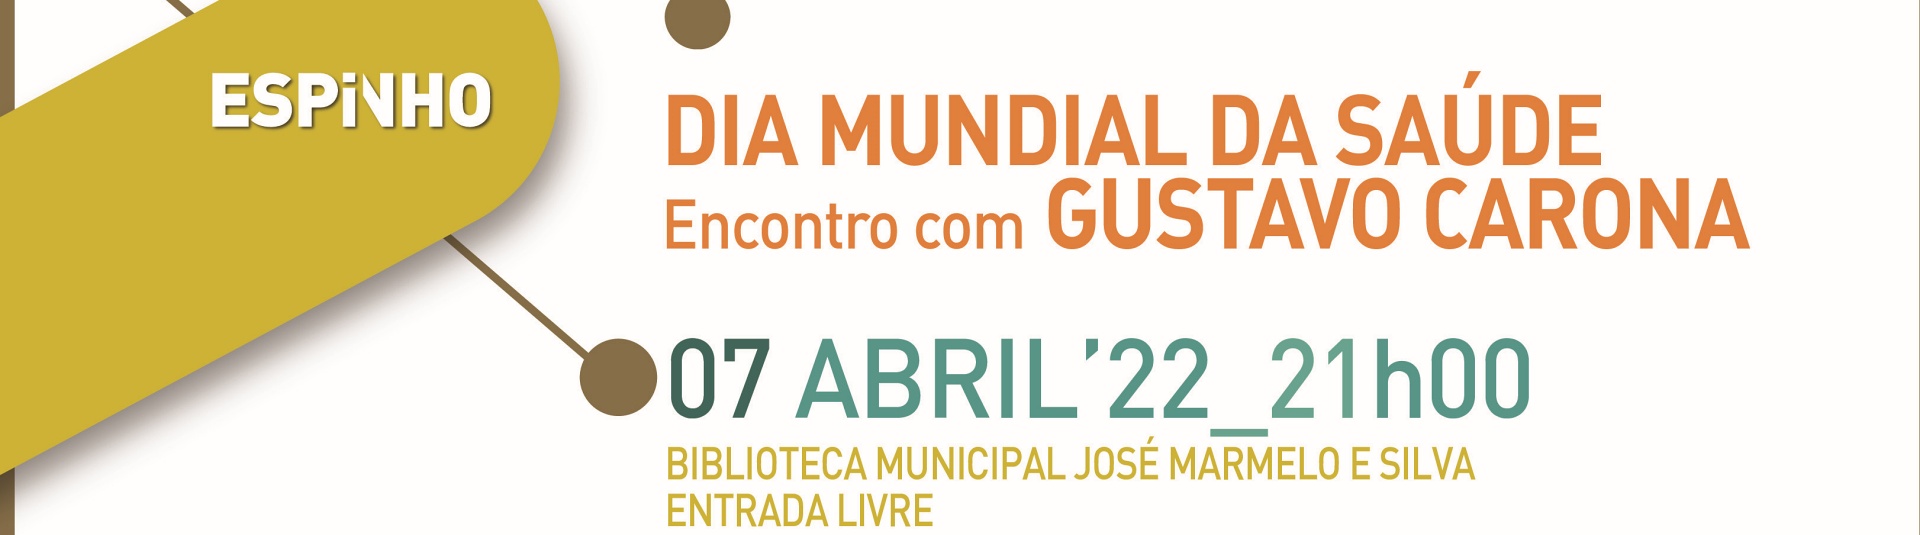 Dia Mundial da Saúde | Encontro com Gustavo Carona